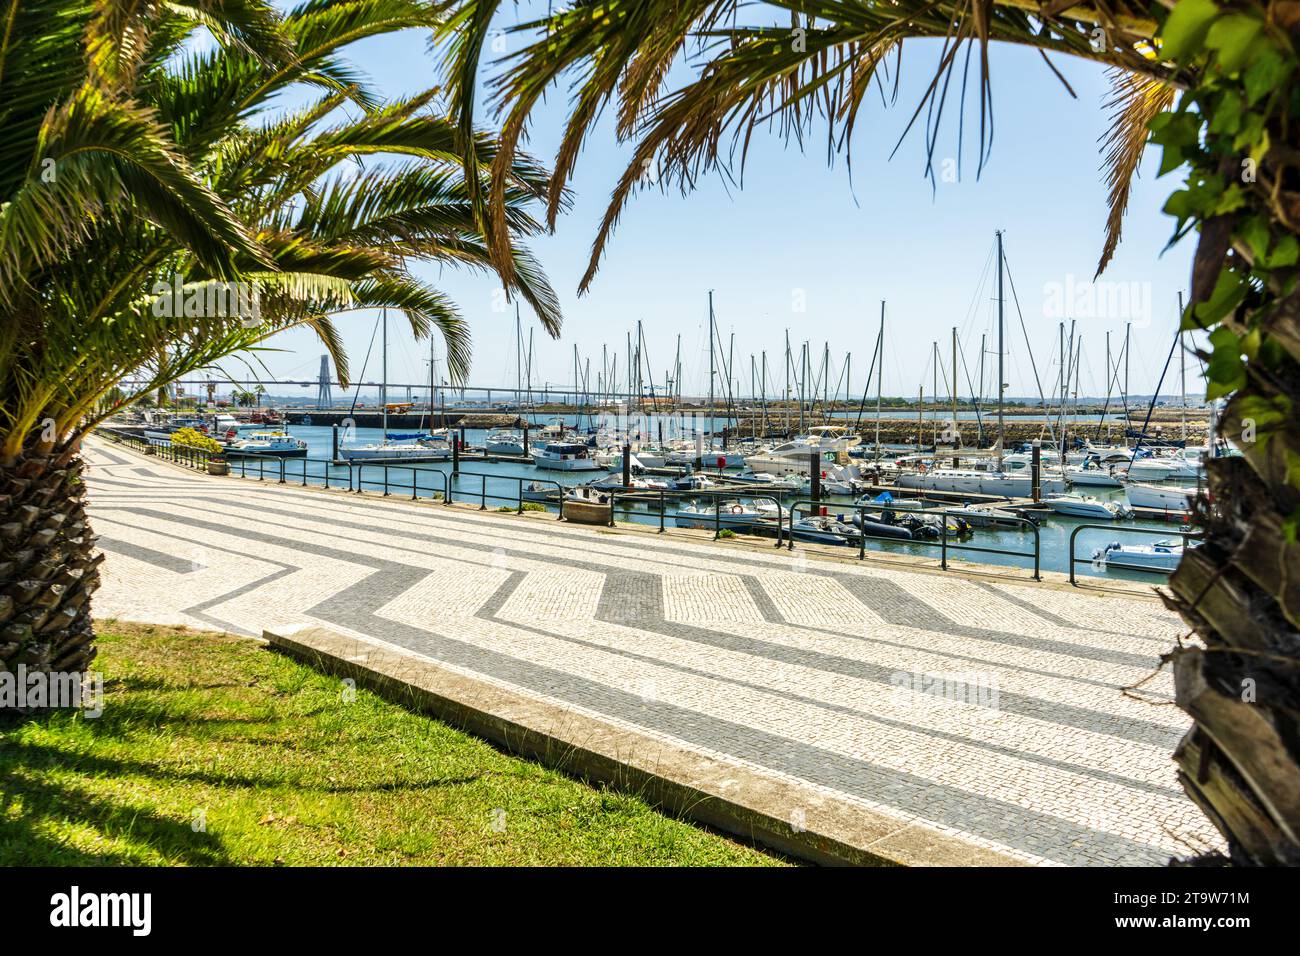 Splendida vista su un molo con barche e yacht, Figueira da Foz, Portogallo Foto Stock